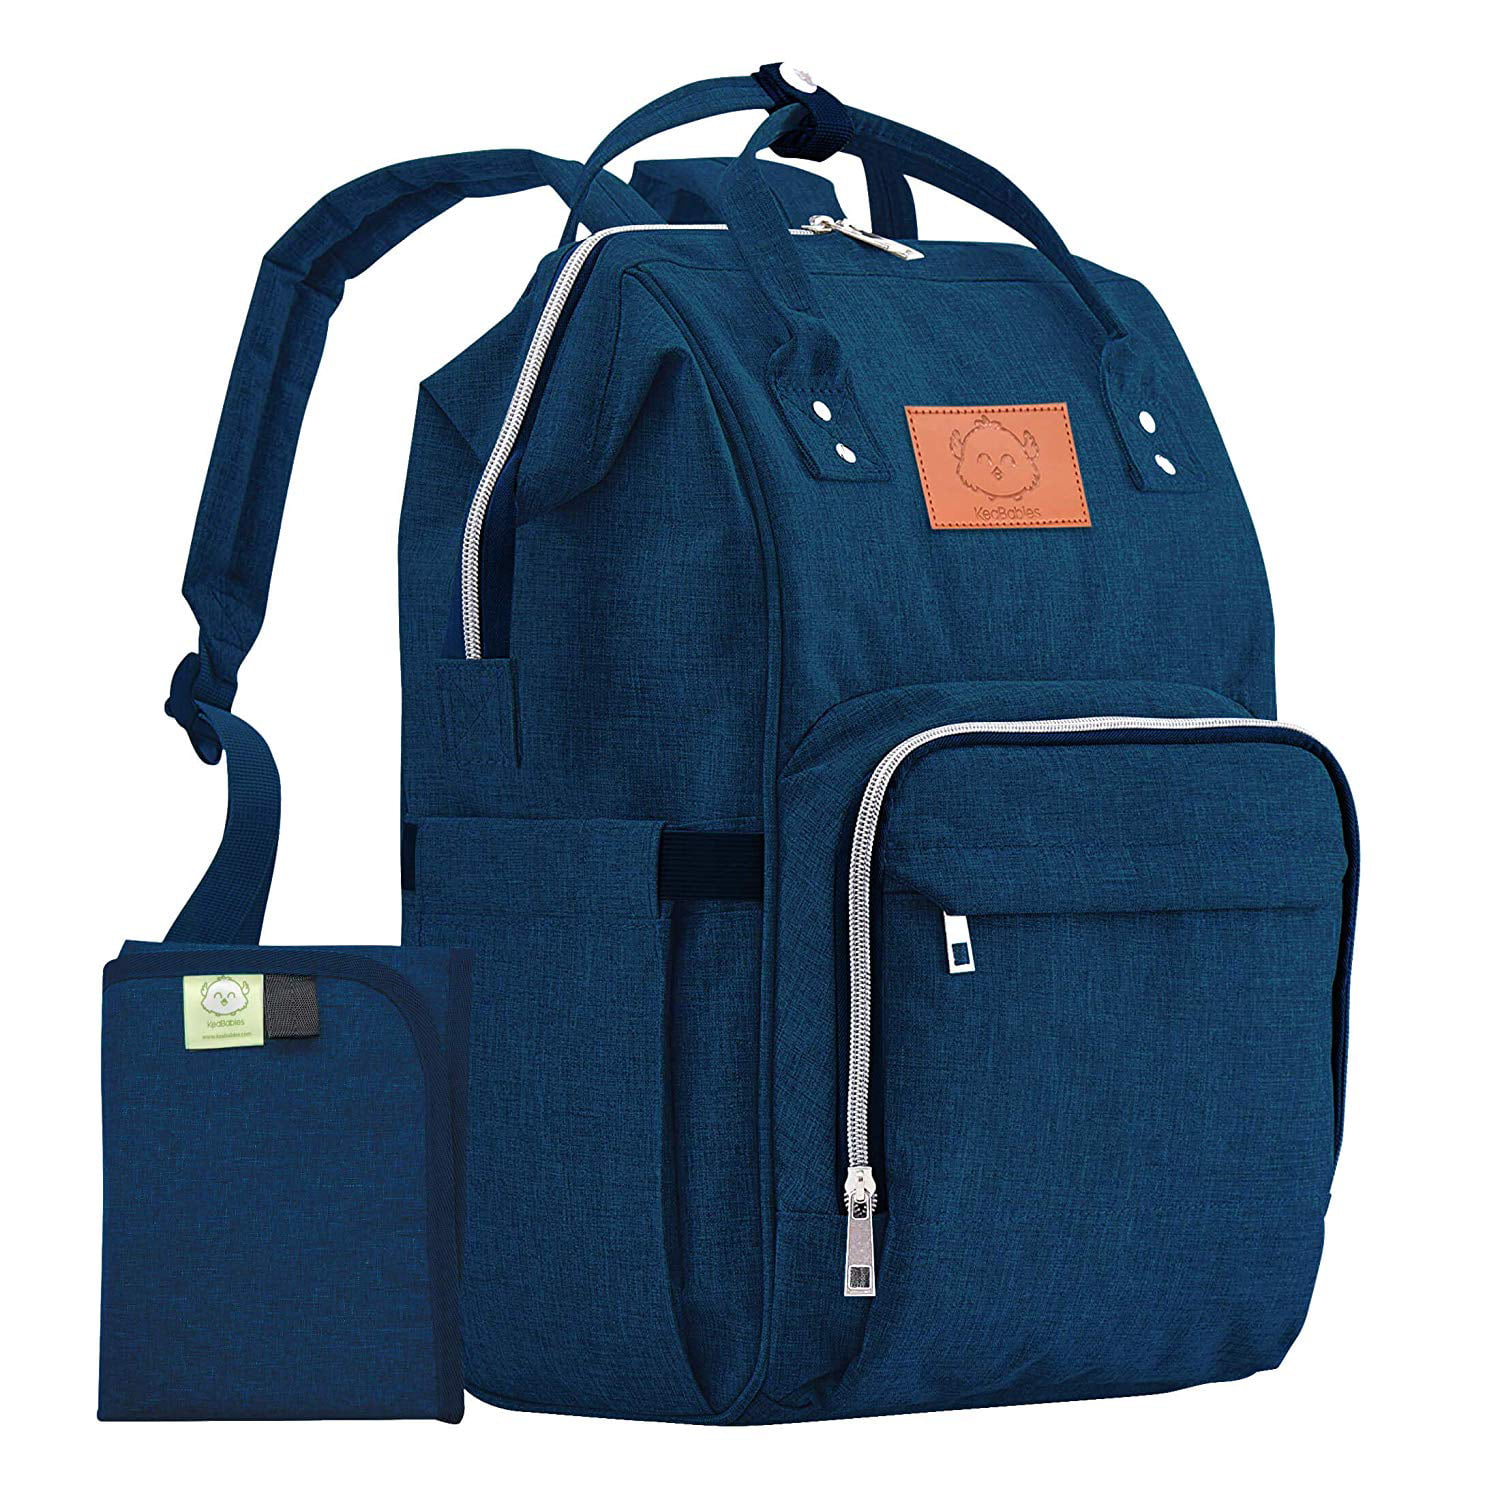 Diaper Bag Backpack Large - Multi-Function Waterproof Baby Travel Bags ...